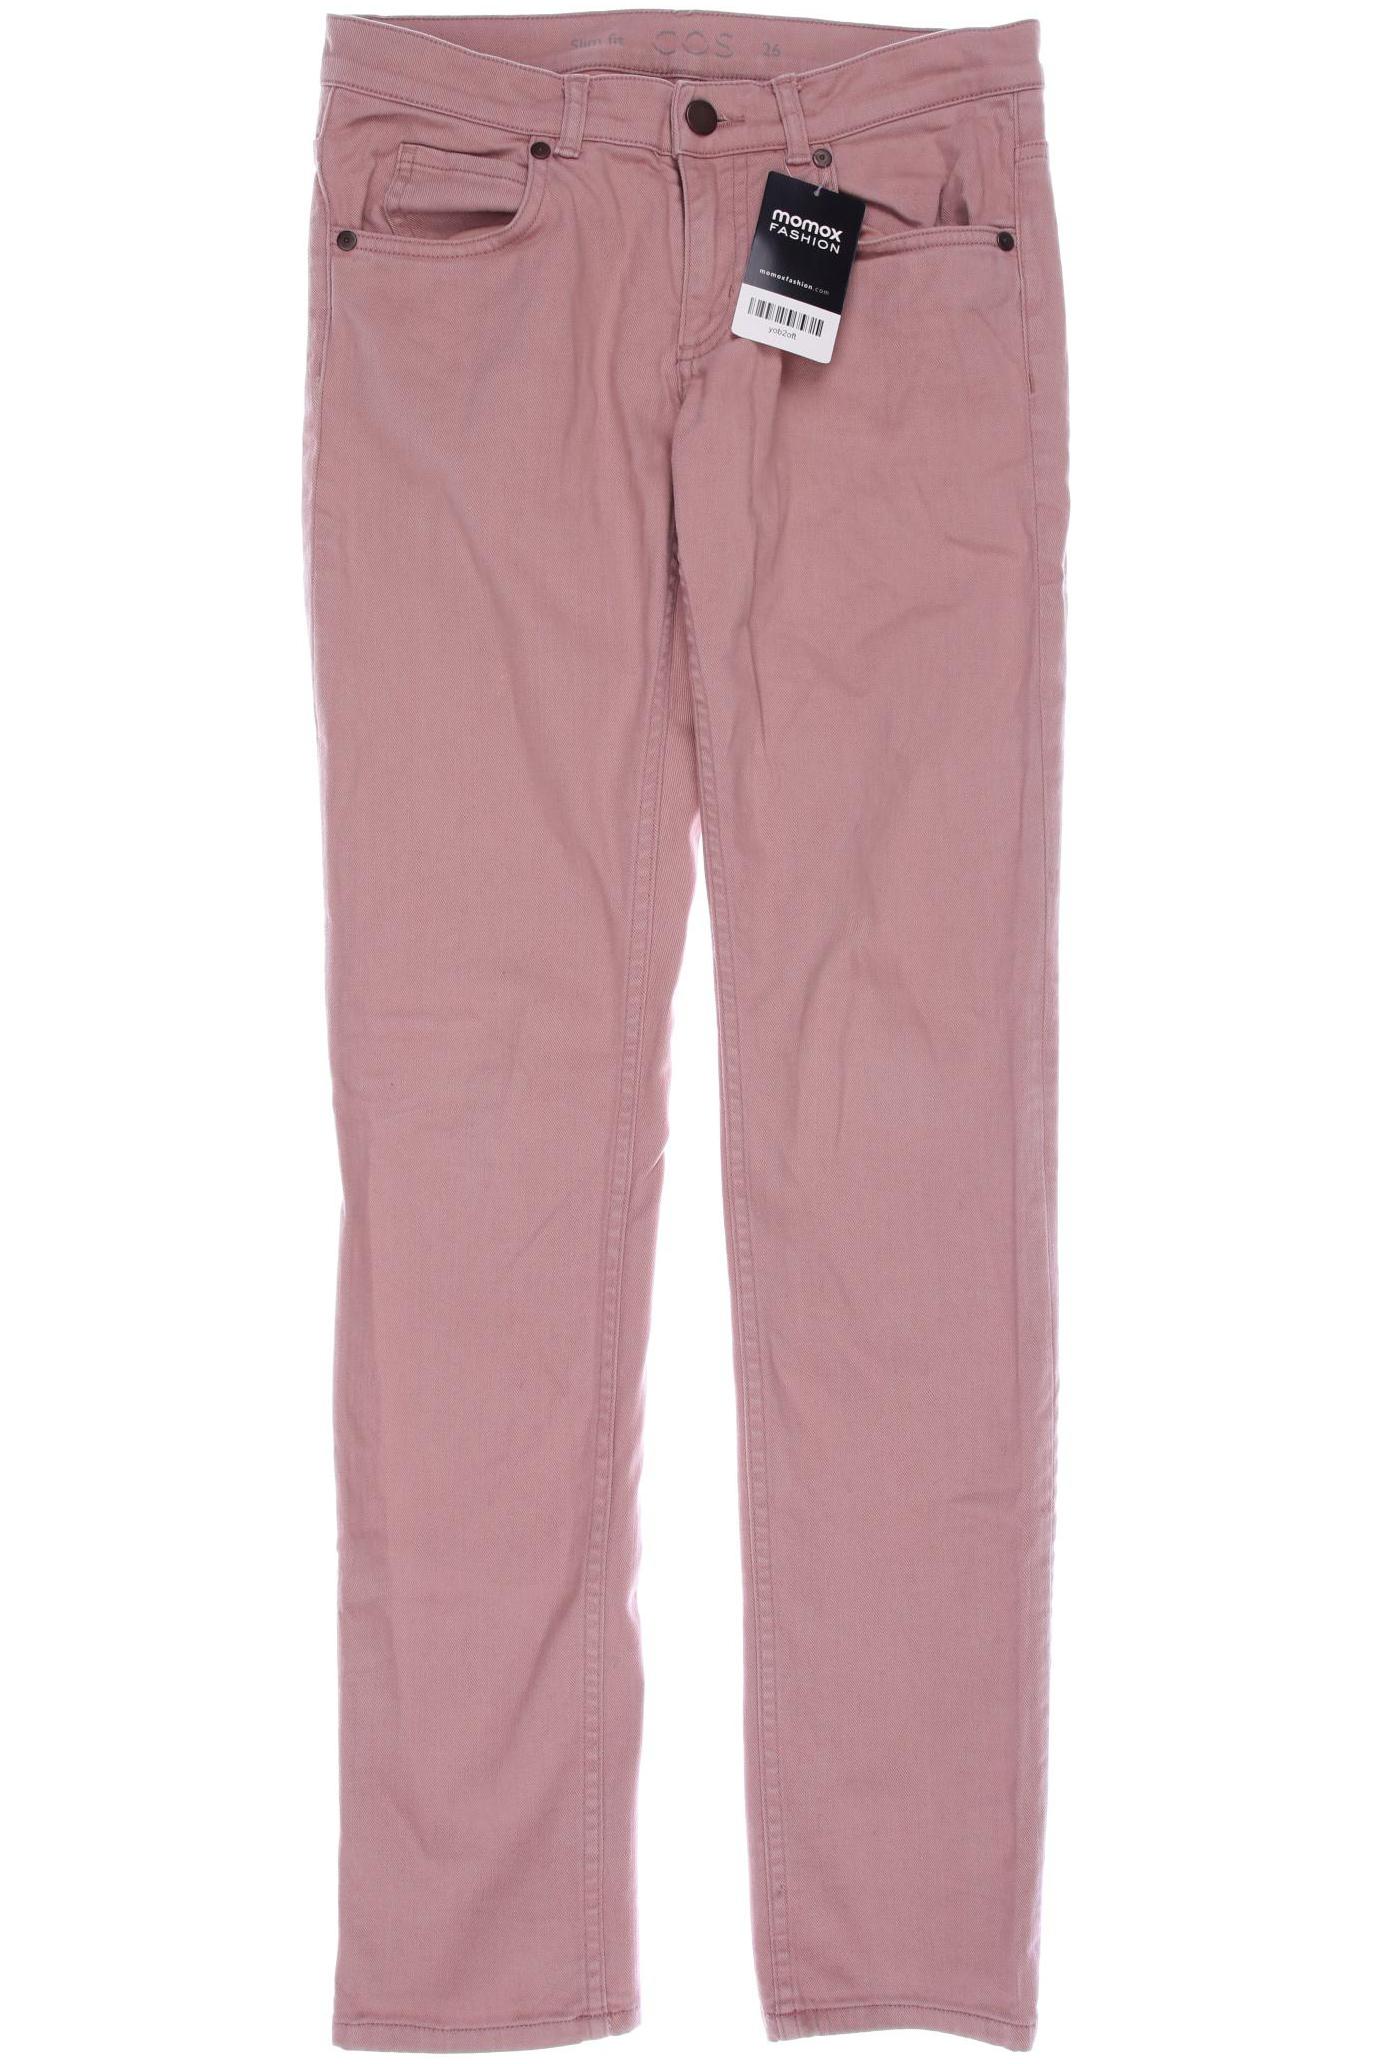 COS Damen Jeans, pink von COS